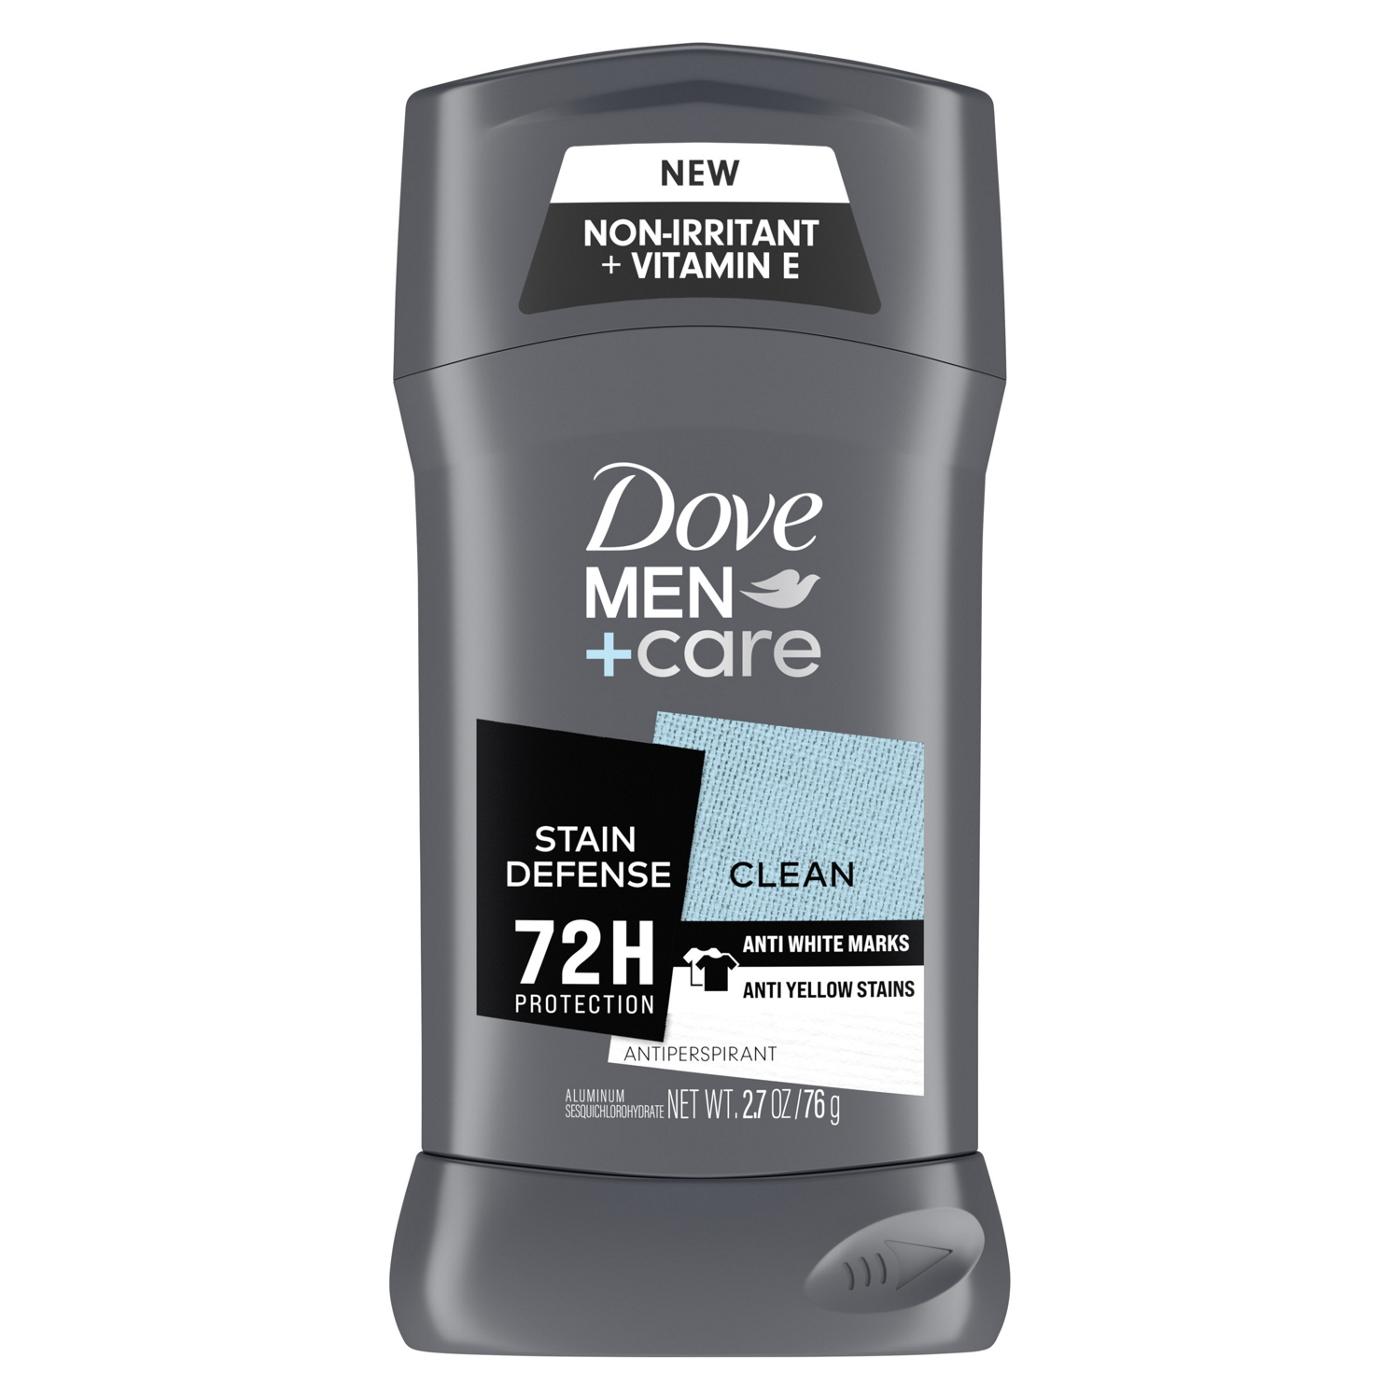 Dove Men+Care Antiperspirant Deodorant Stain Defense Clean; image 1 of 7